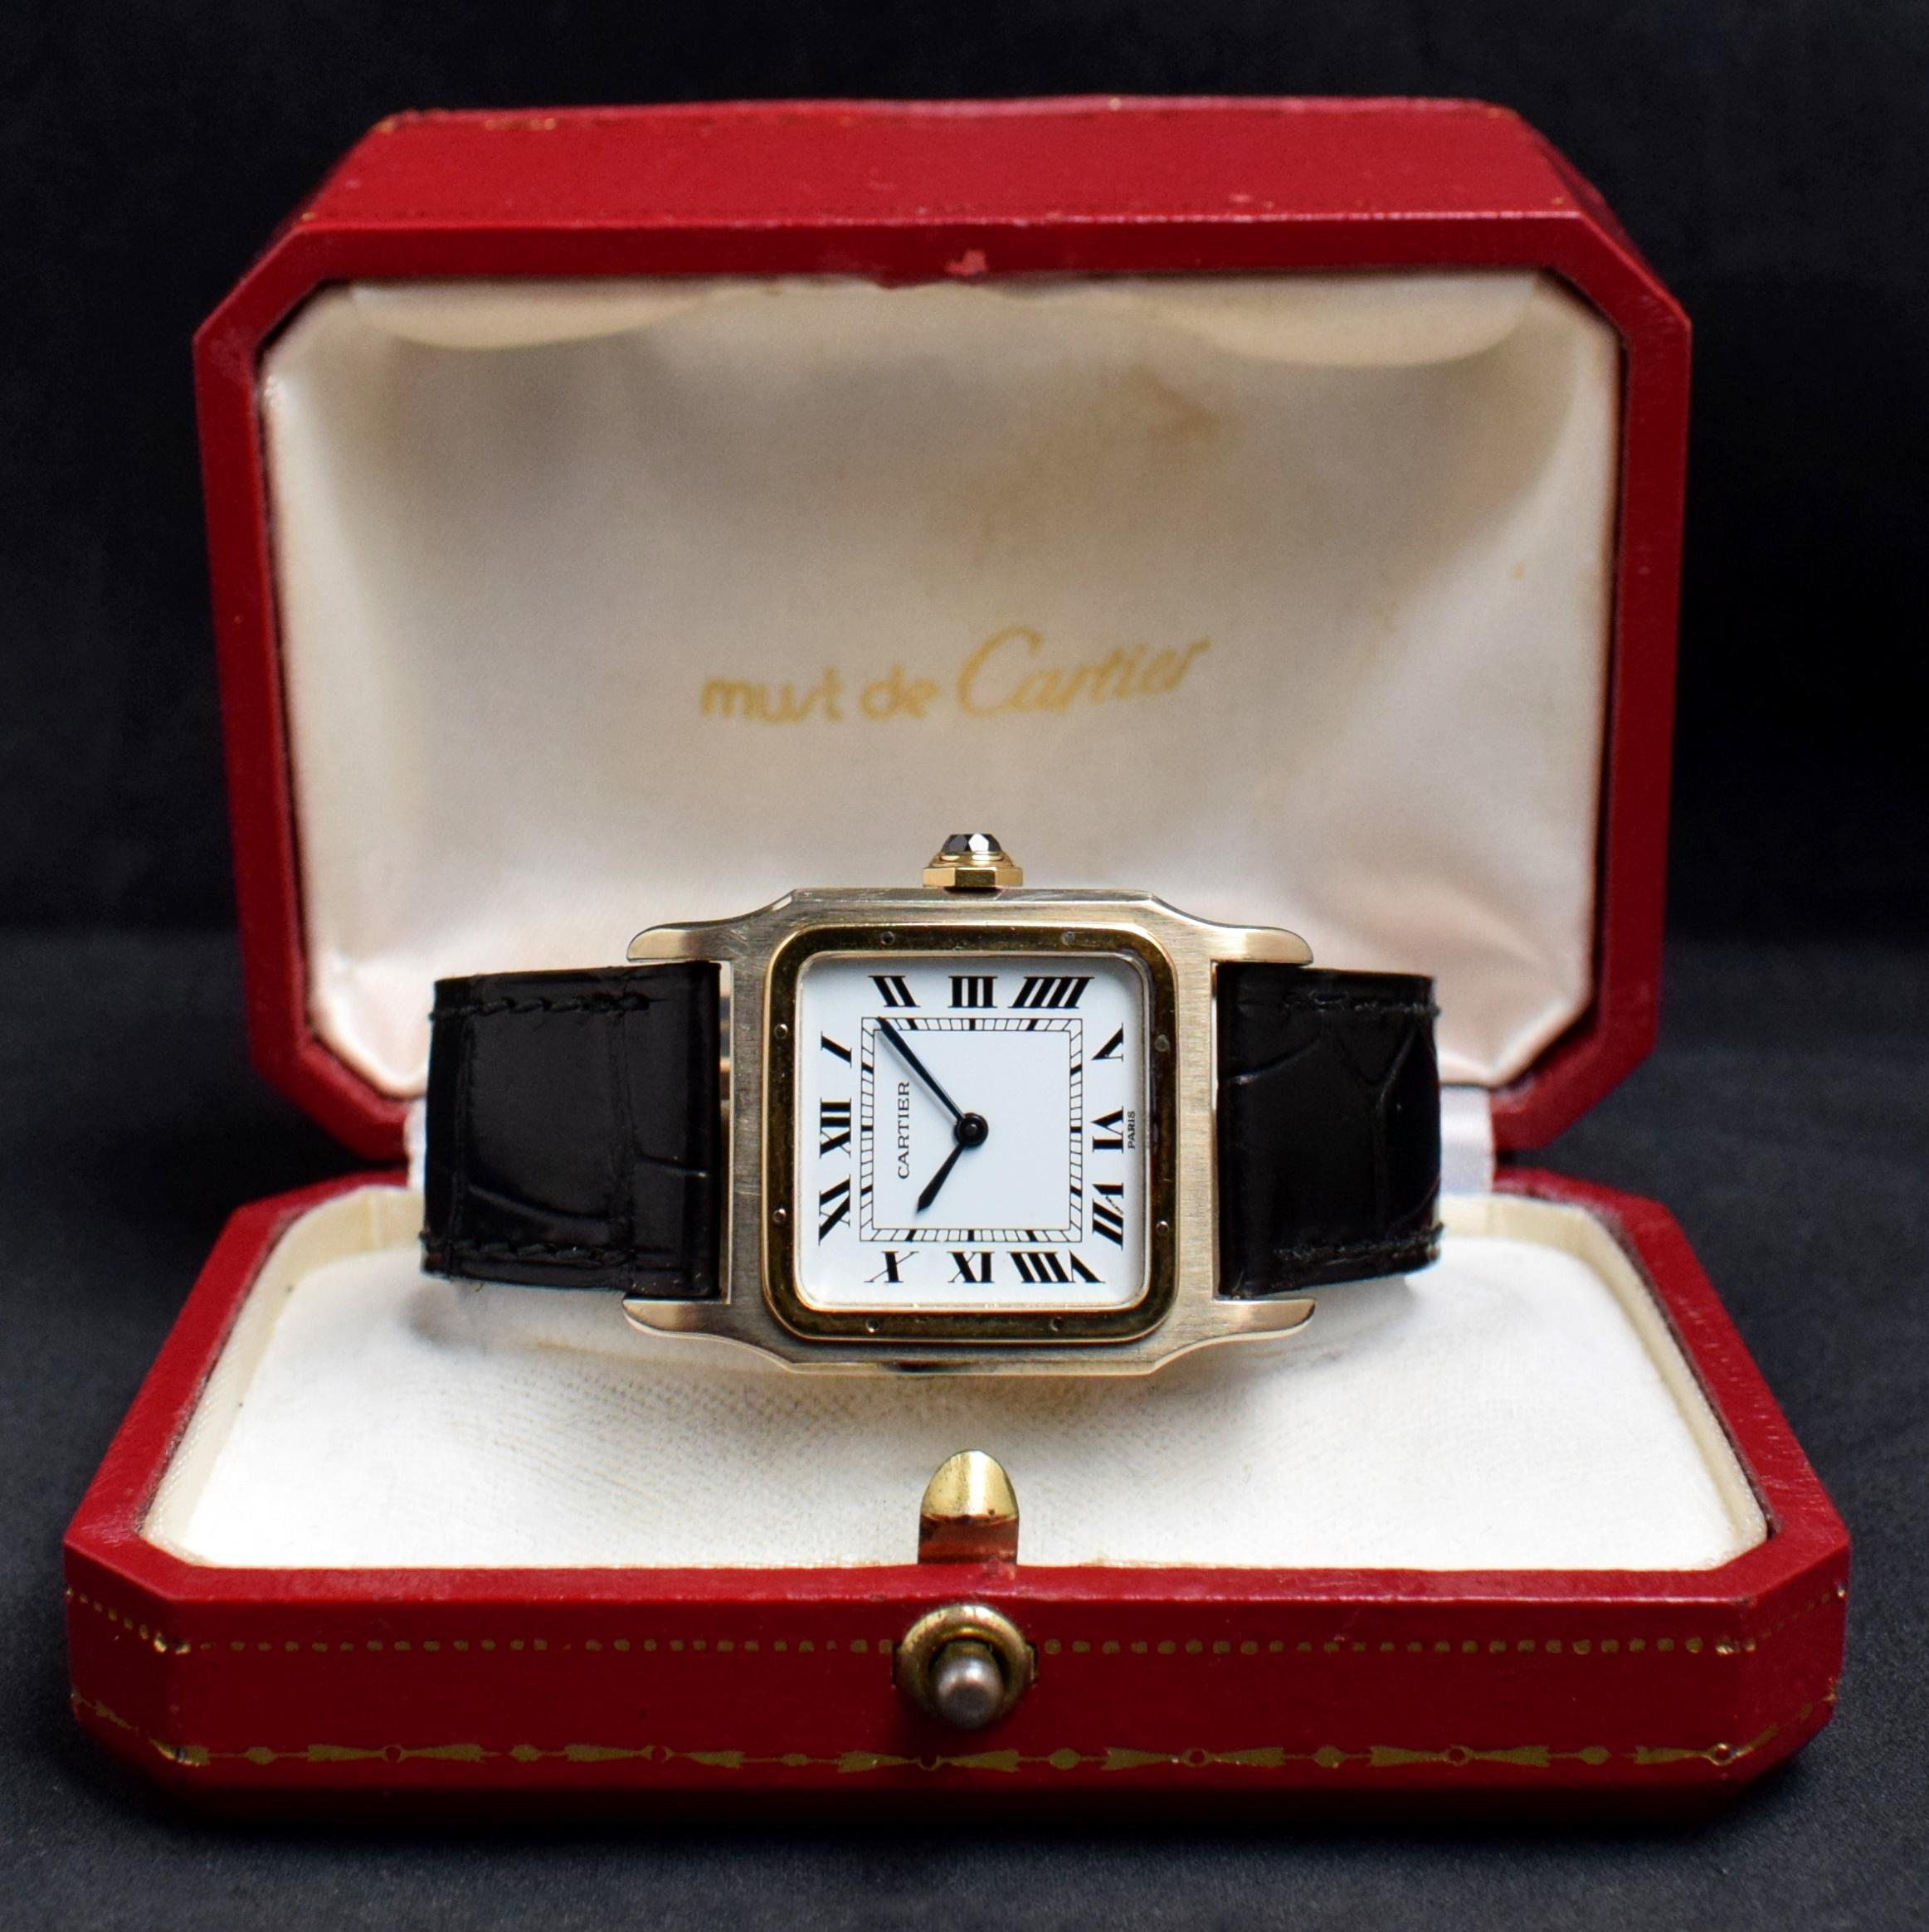 Marke: Vintage Cartier
Modell: Santos Dumont
Jahr: 1980er Jahre
Uhrwerk: Handaufzug
Seriennummer: 78xxxxxxx
Referenz: C03225
Das bedeutendste Modell von Cartier, die 